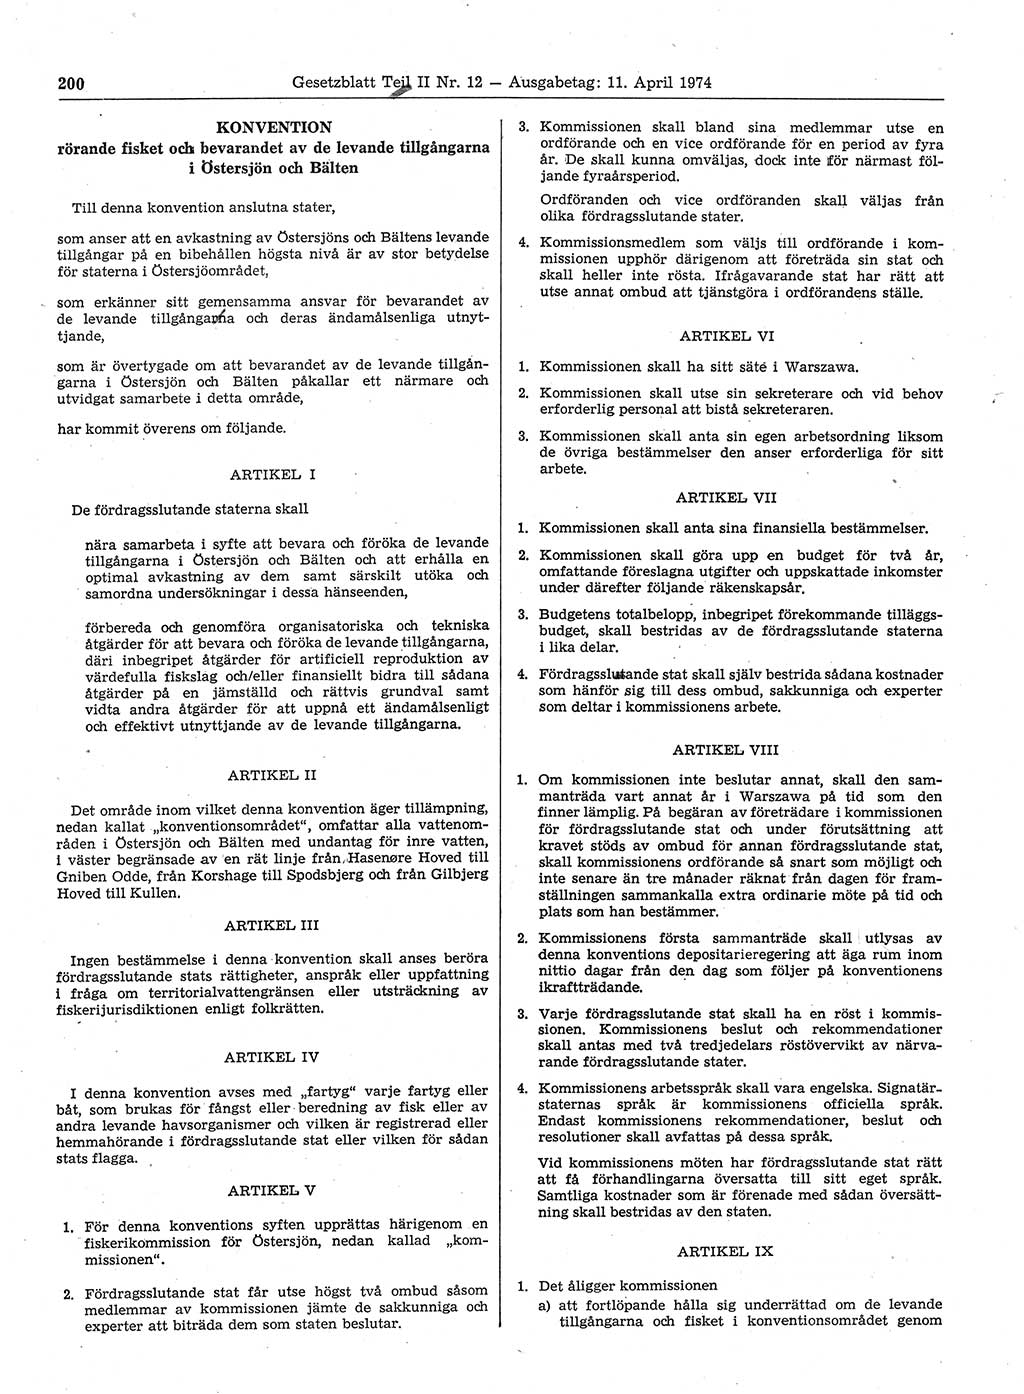 Gesetzblatt (GBl.) der Deutschen Demokratischen Republik (DDR) Teil ⅠⅠ 1974, Seite 200 (GBl. DDR ⅠⅠ 1974, S. 200)